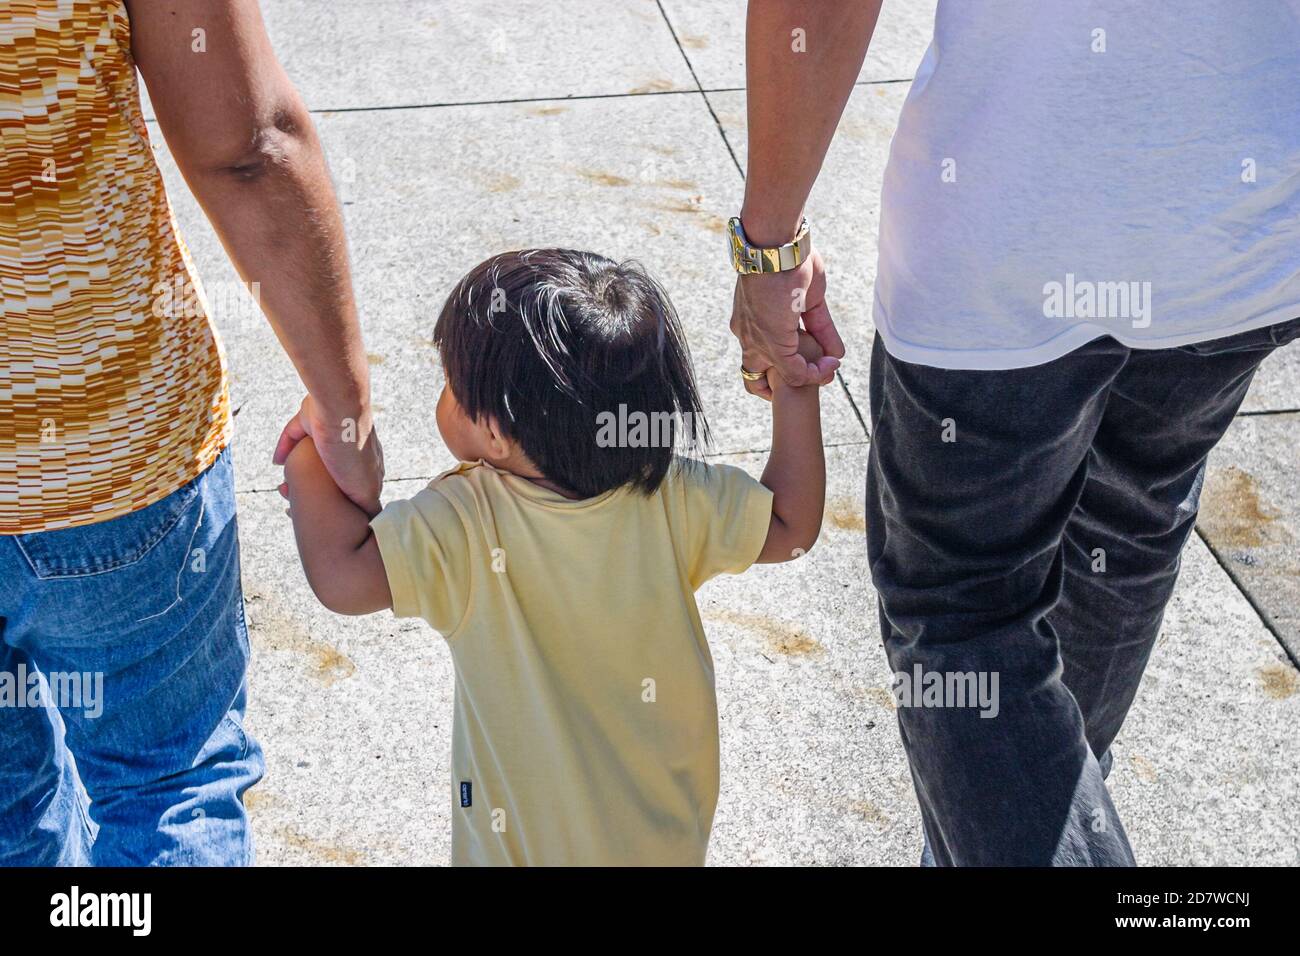 Miami Florida, Festival de Año Nuevo Chino, niña asiática sostiene a los padres manos, Foto de stock